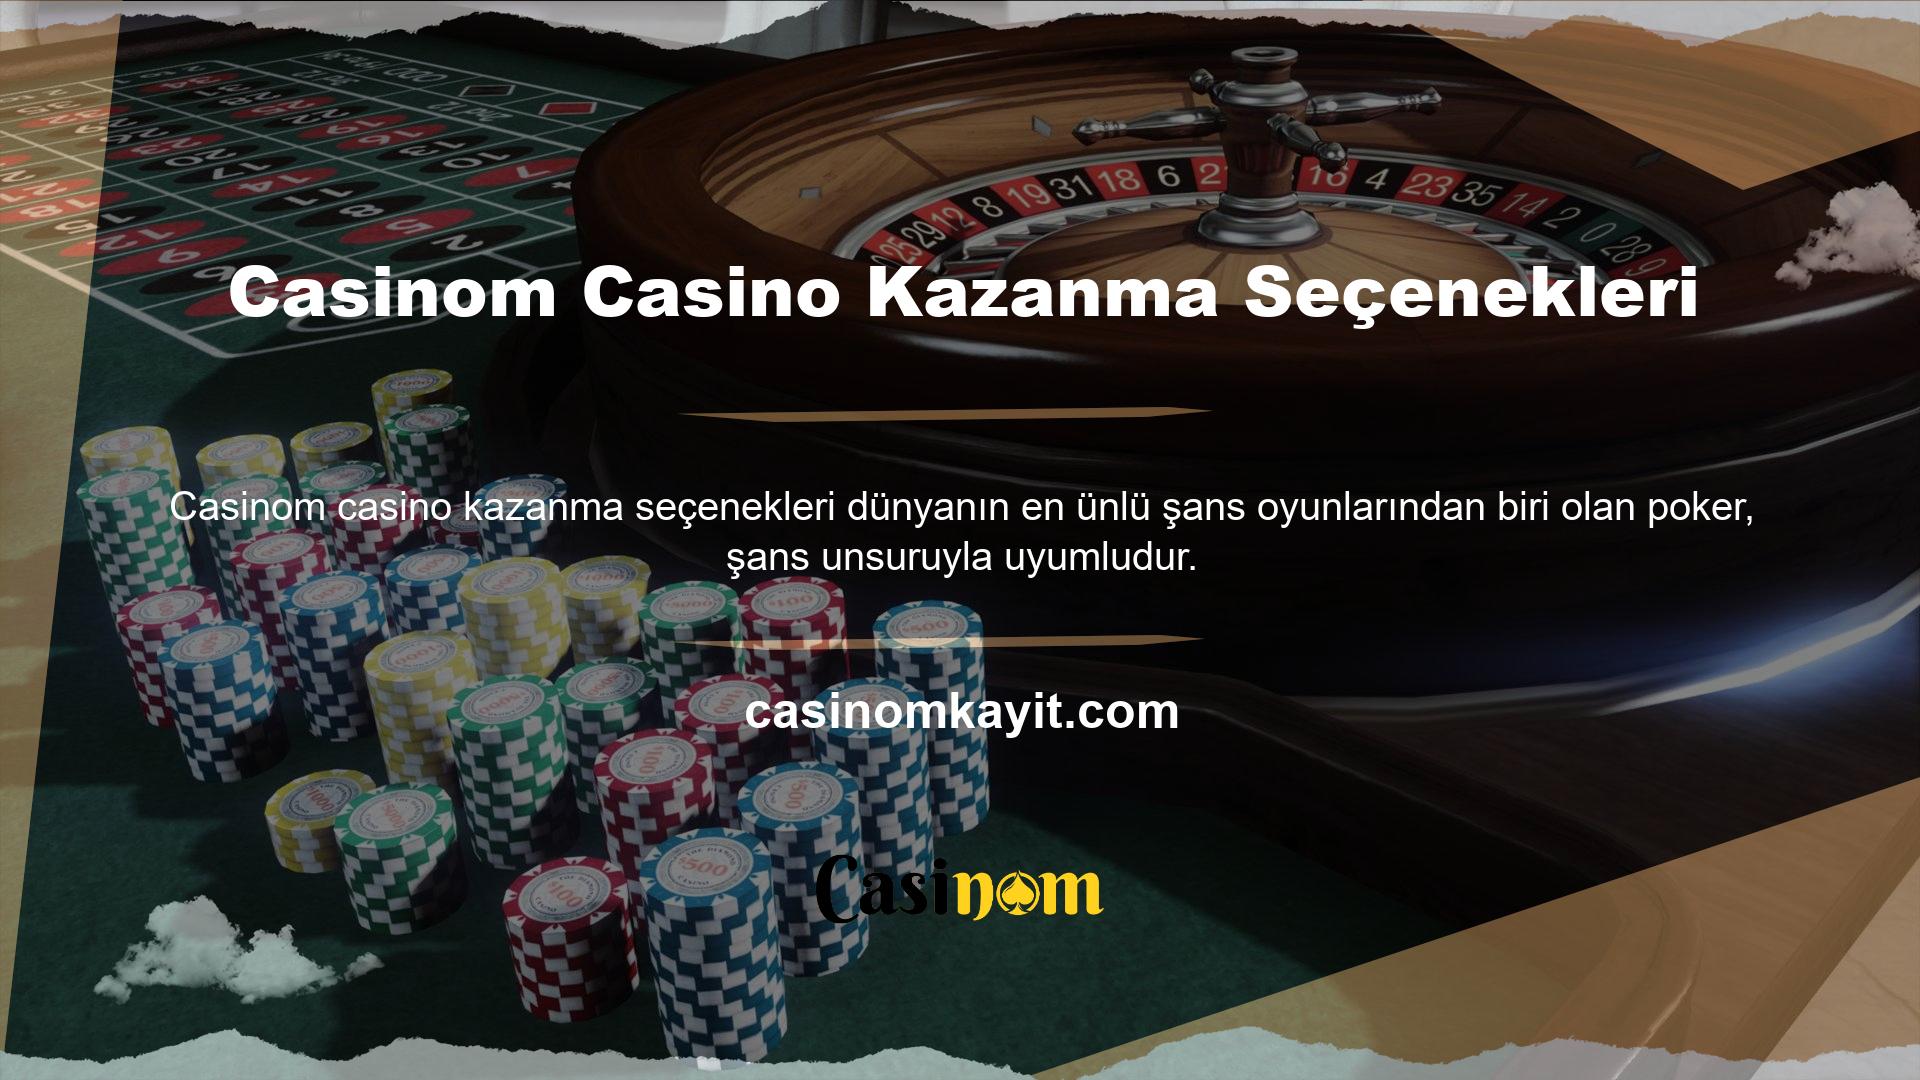 Buna "özellikli casino oyunu" denir ve potansiyel olarak büyük kazançlar sağlayabilir